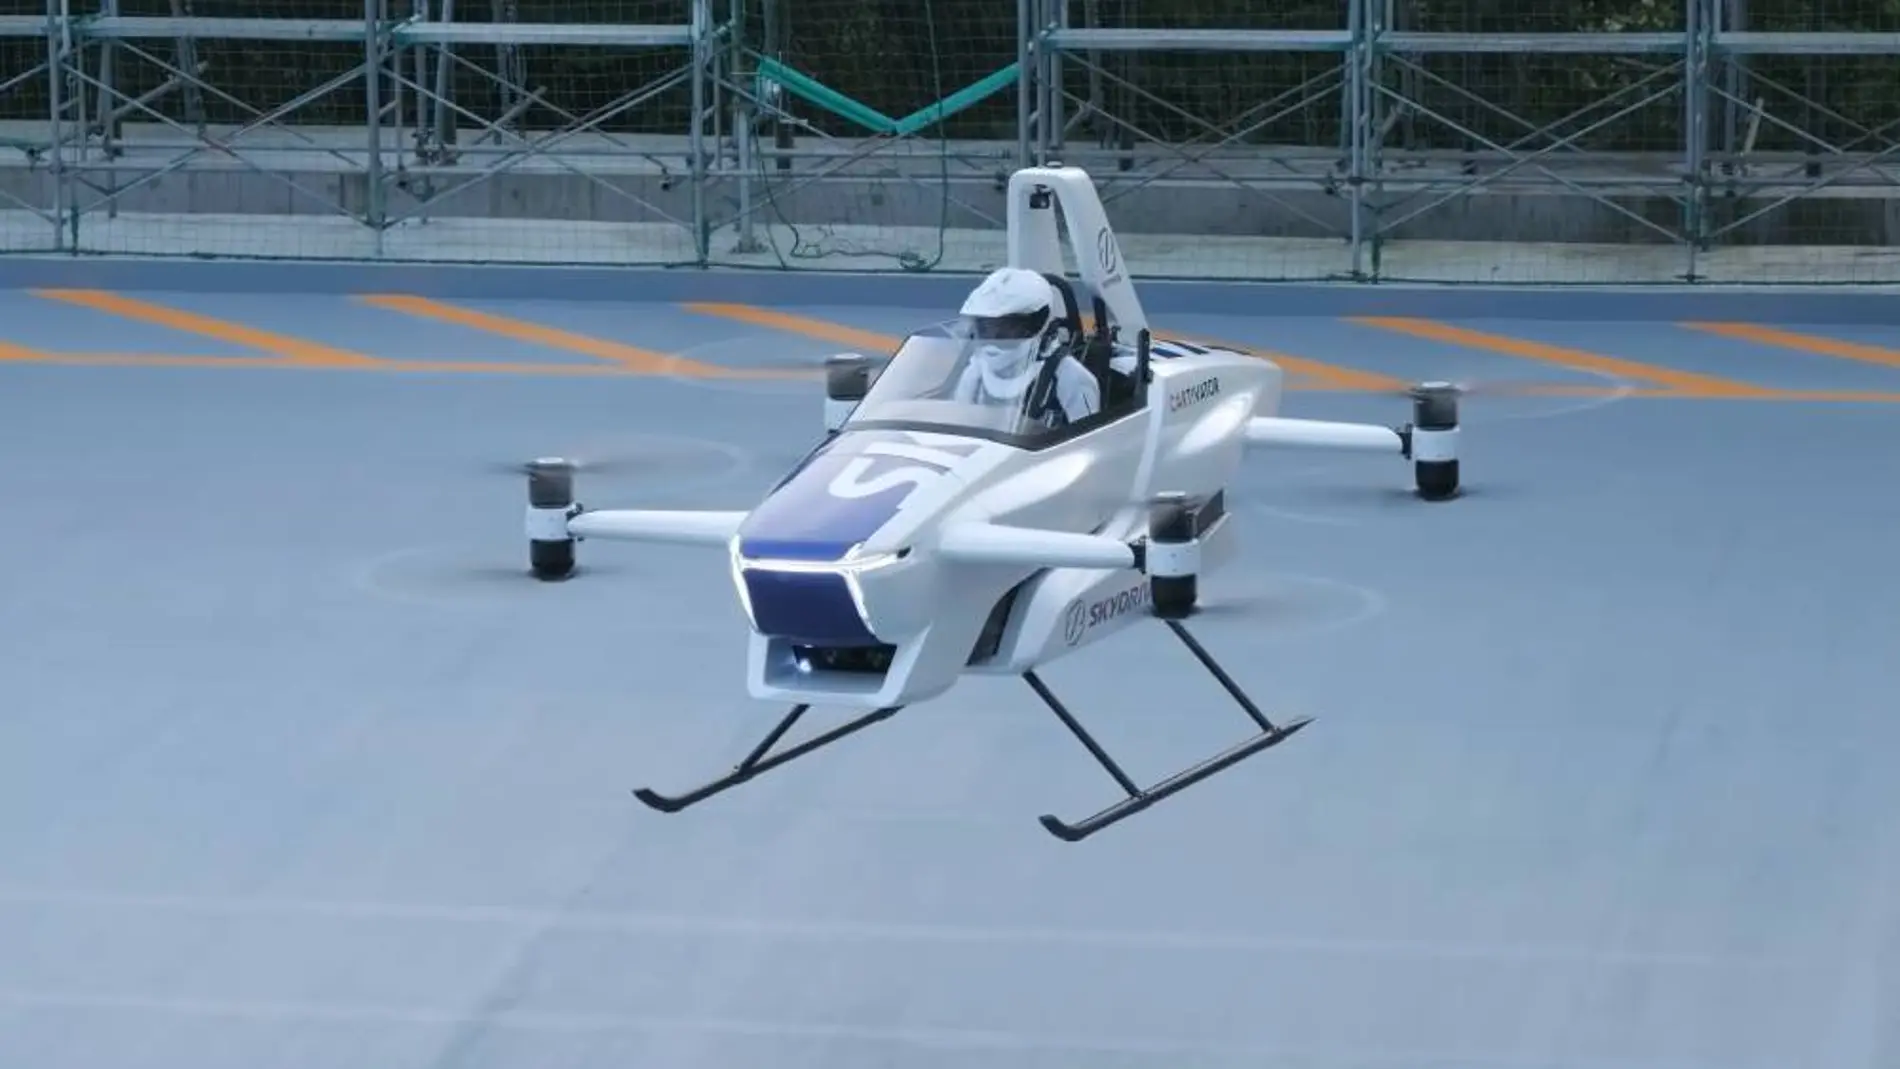 El coche volador ya no es ciencia ficción: así es el primero pilotado con éxito